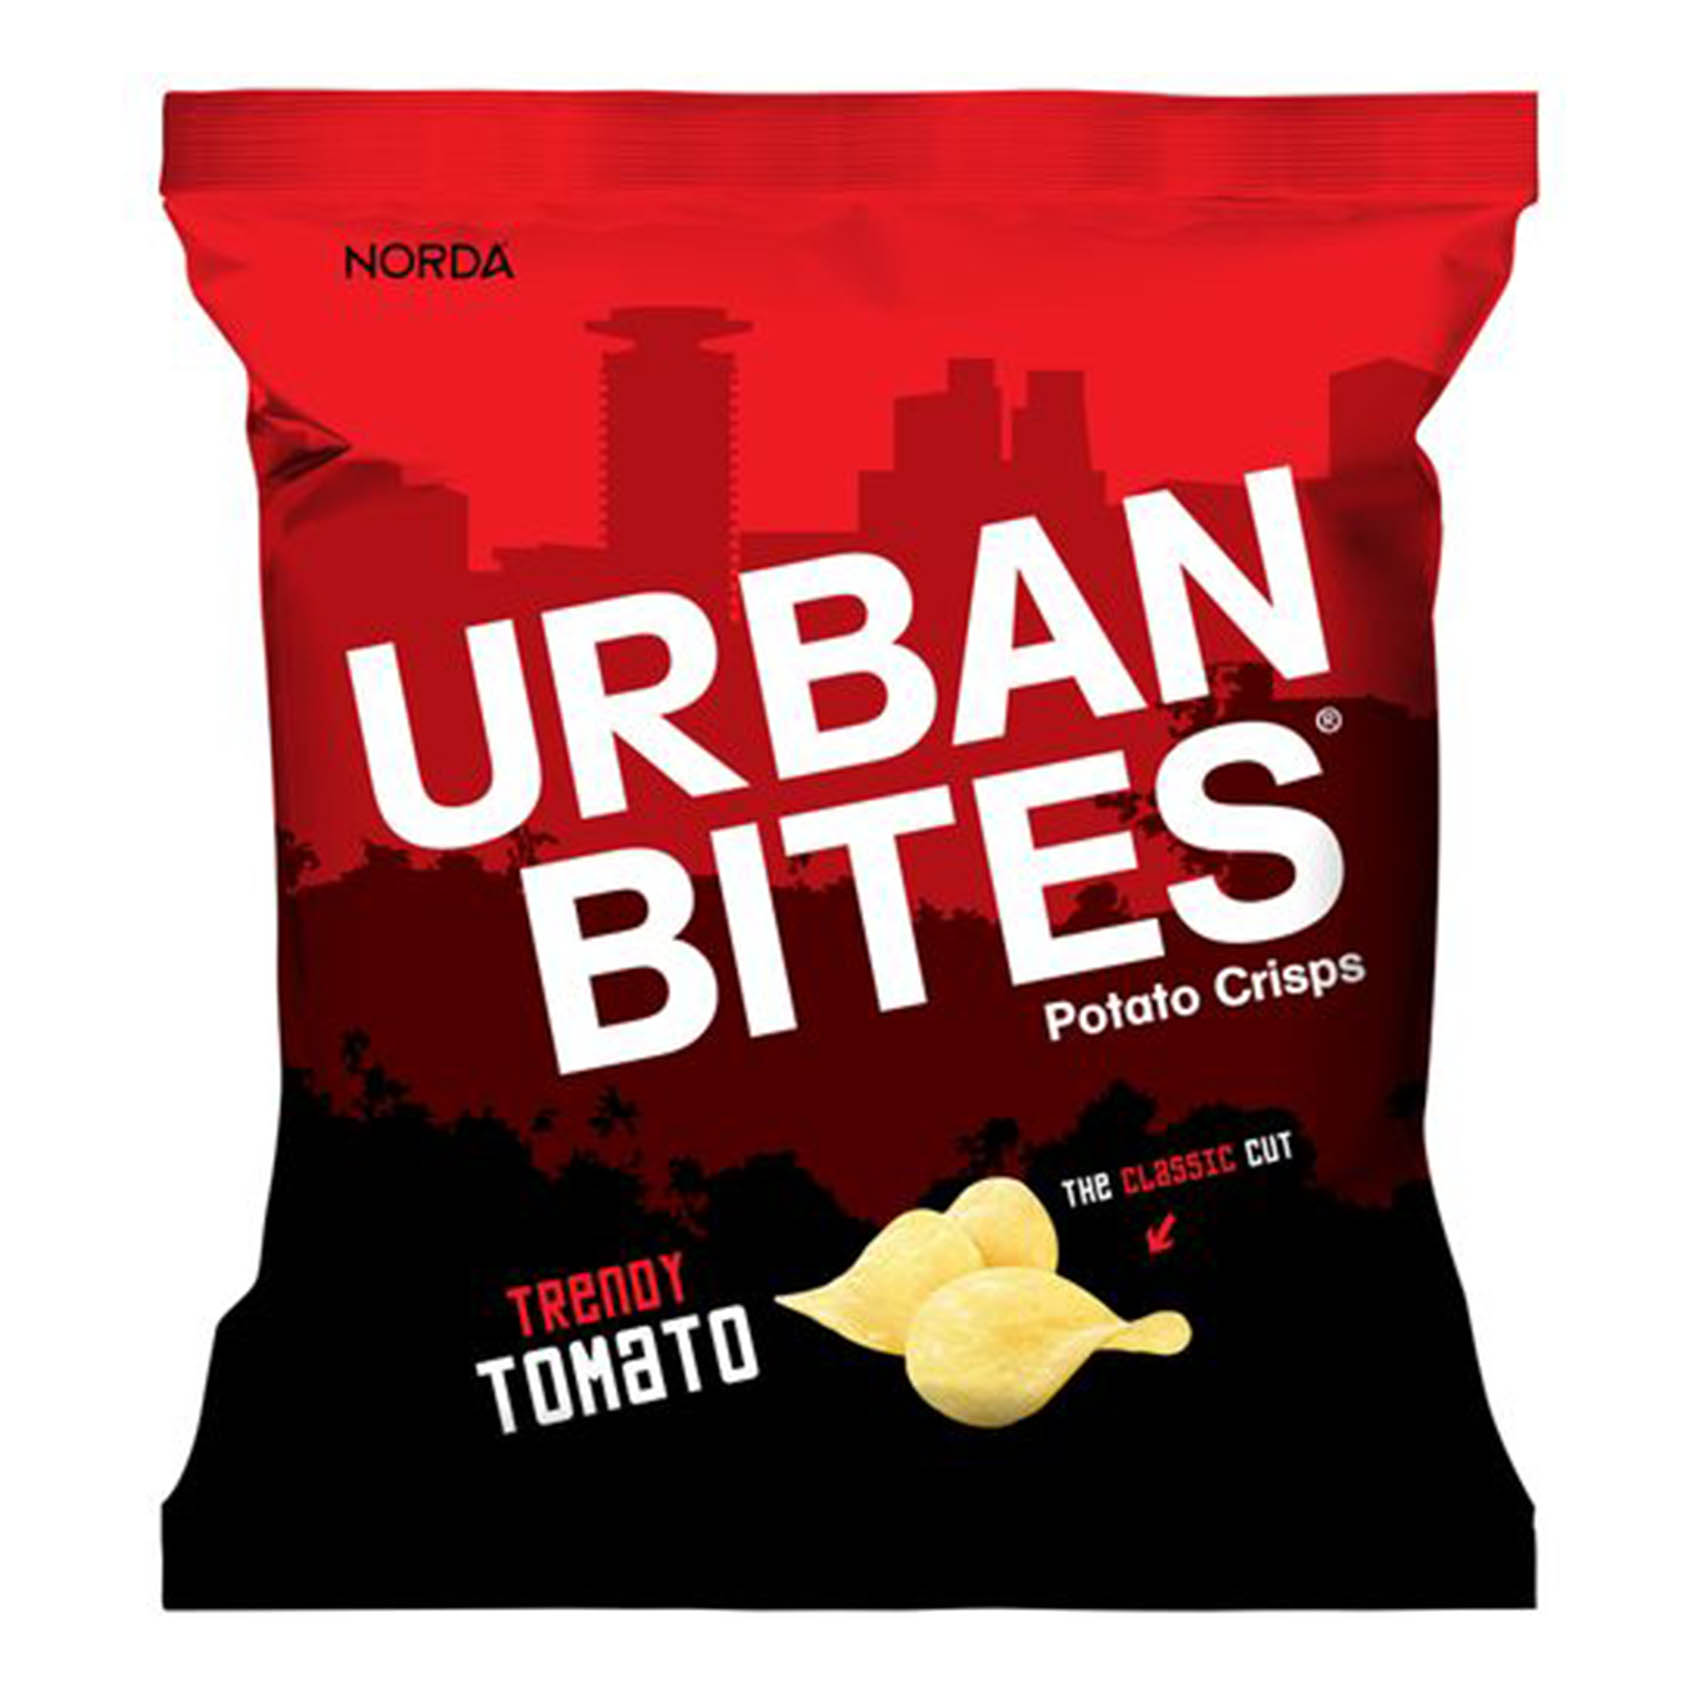 Norda Urban Bites Trendy Tomato Potato Crisps 30g